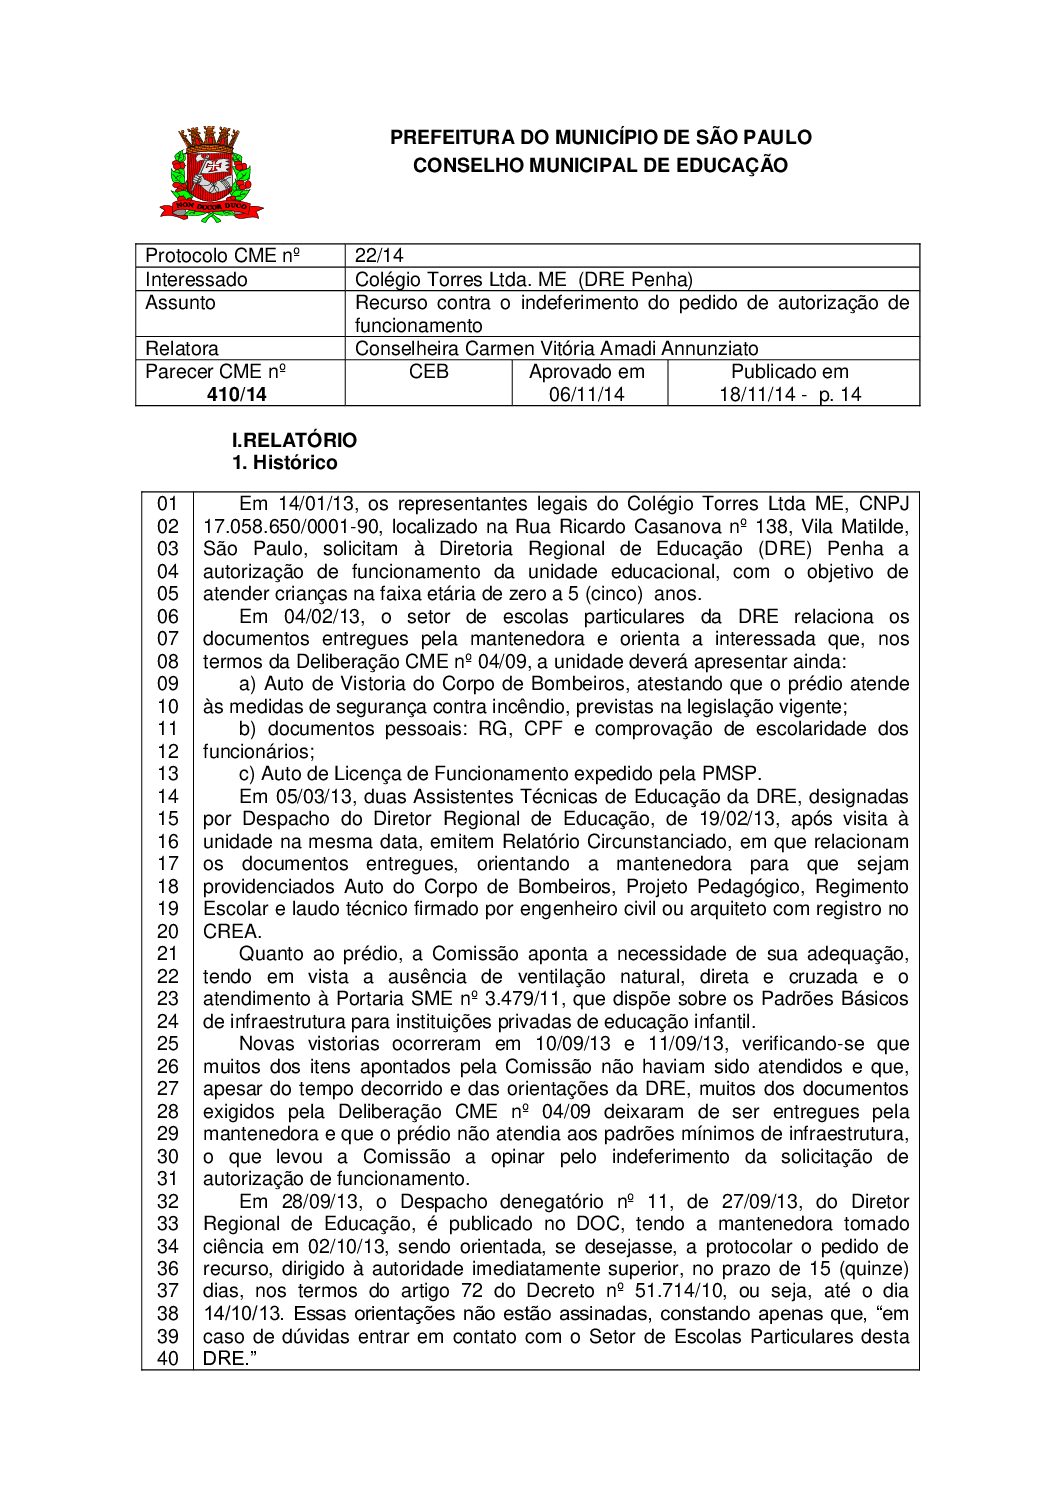 Parecer CME nº 410/2014 - Colégio Torres Ltda ME (DRE Penha) - Recurso contra o indeferimento do pedido de autorização de funcionamento 